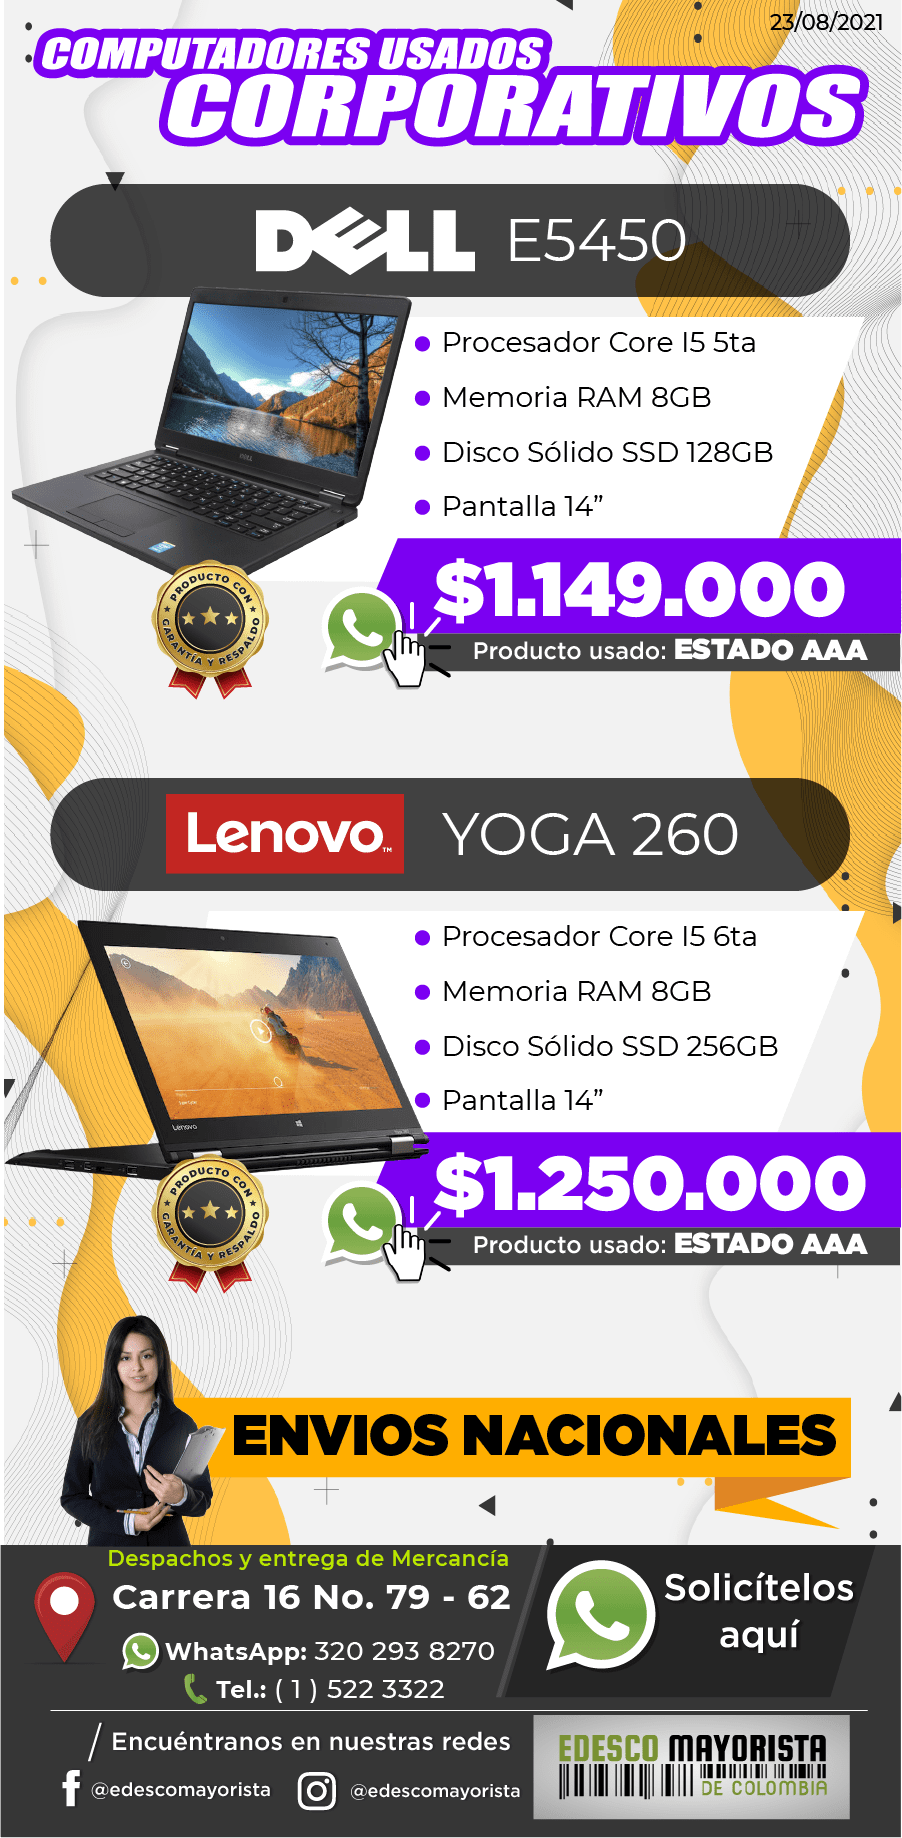 Portátil DELL E5450 - Lenovo Yoga 260